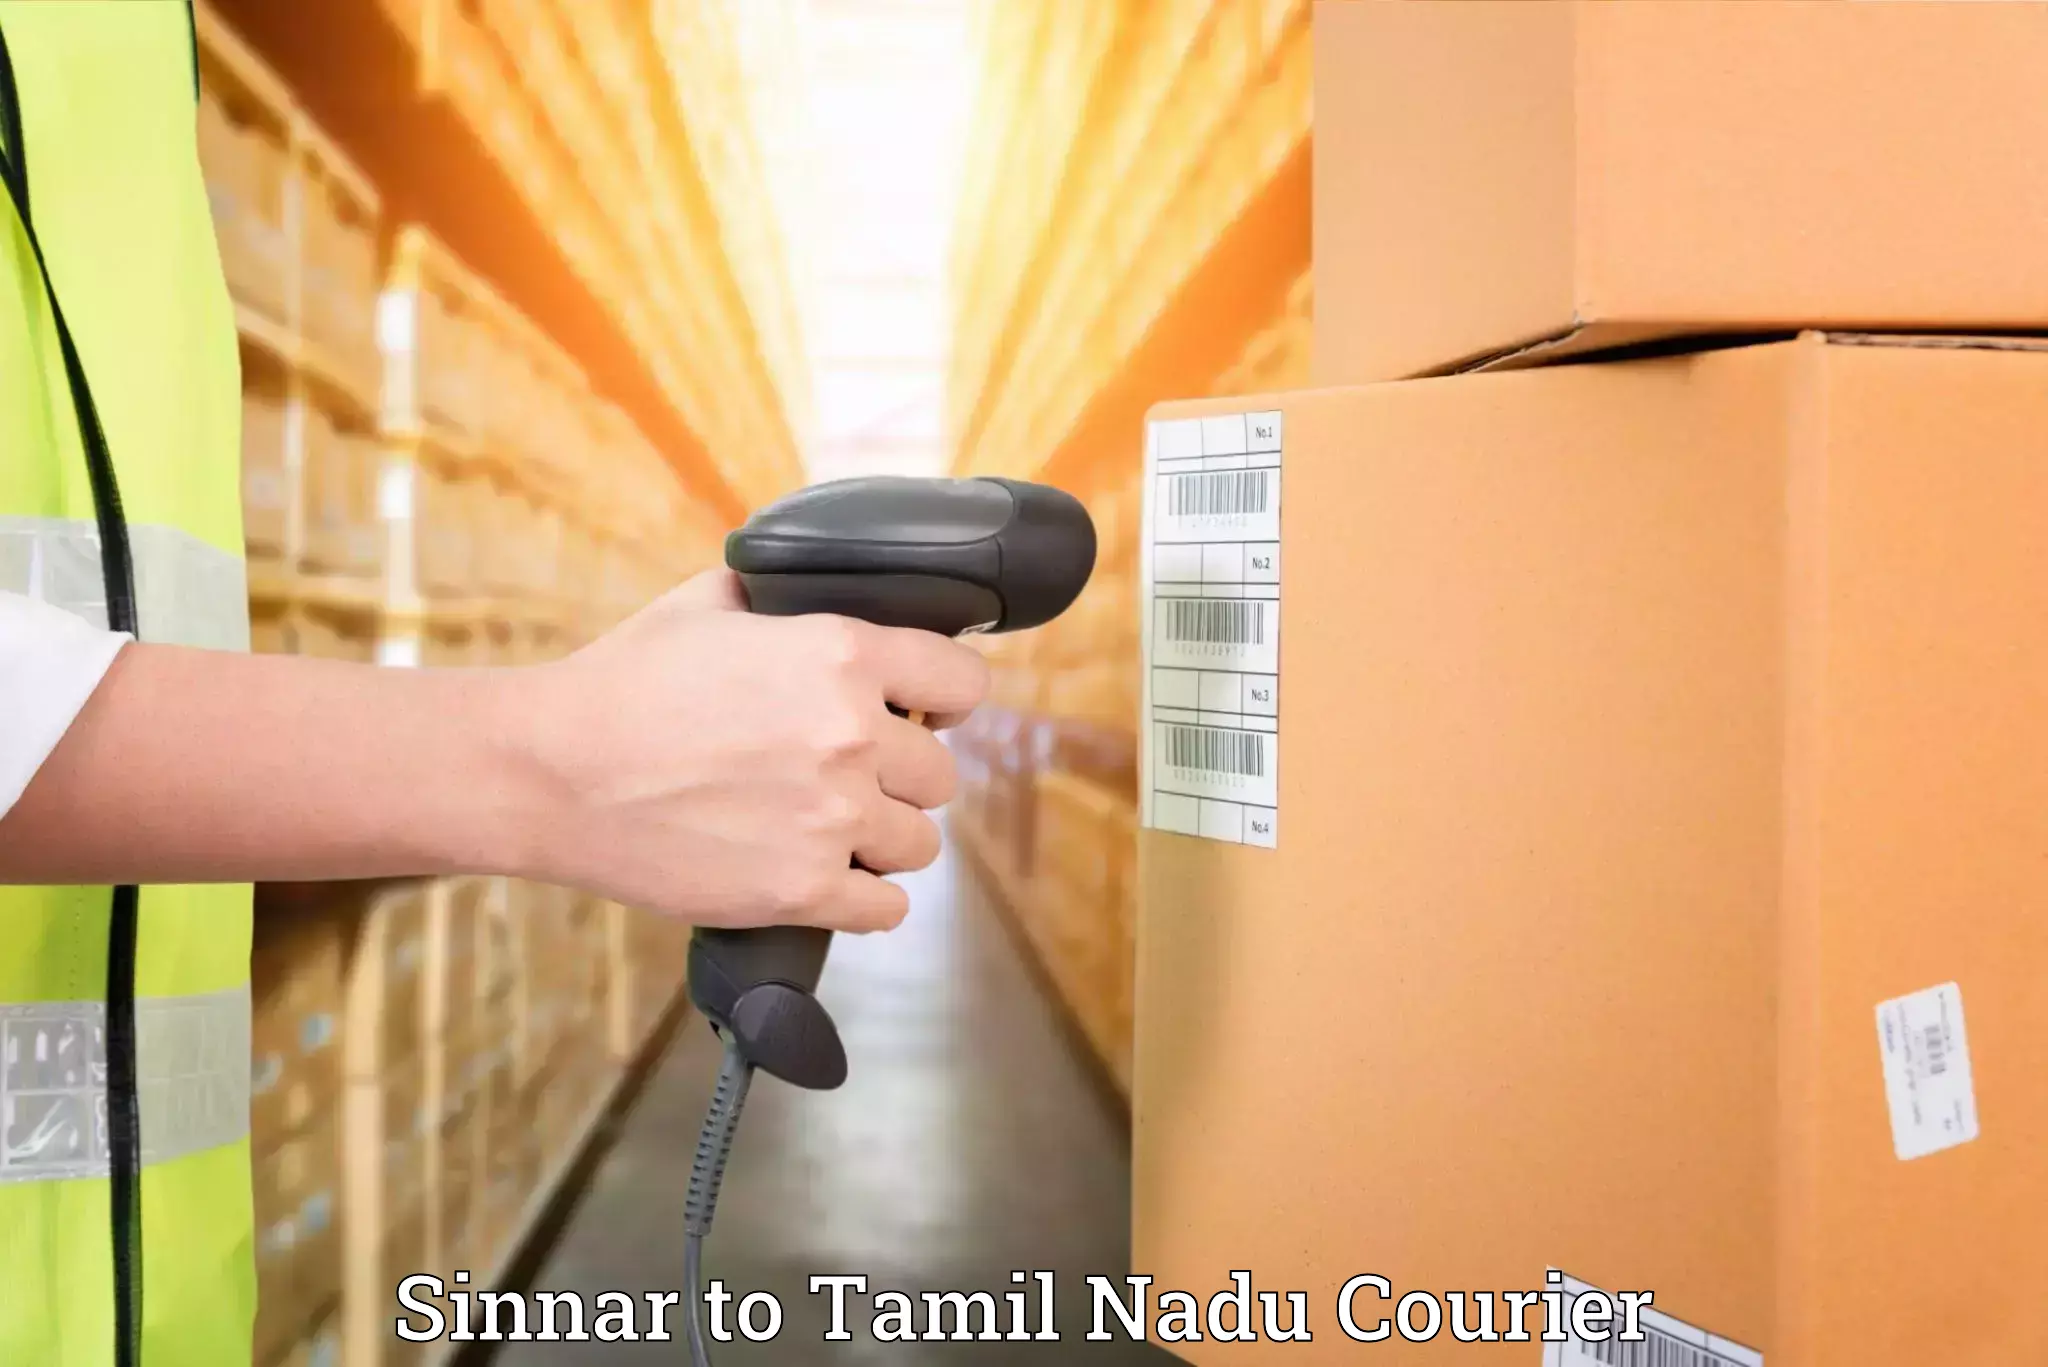 Furniture transport specialists Sinnar to Tamil Nadu